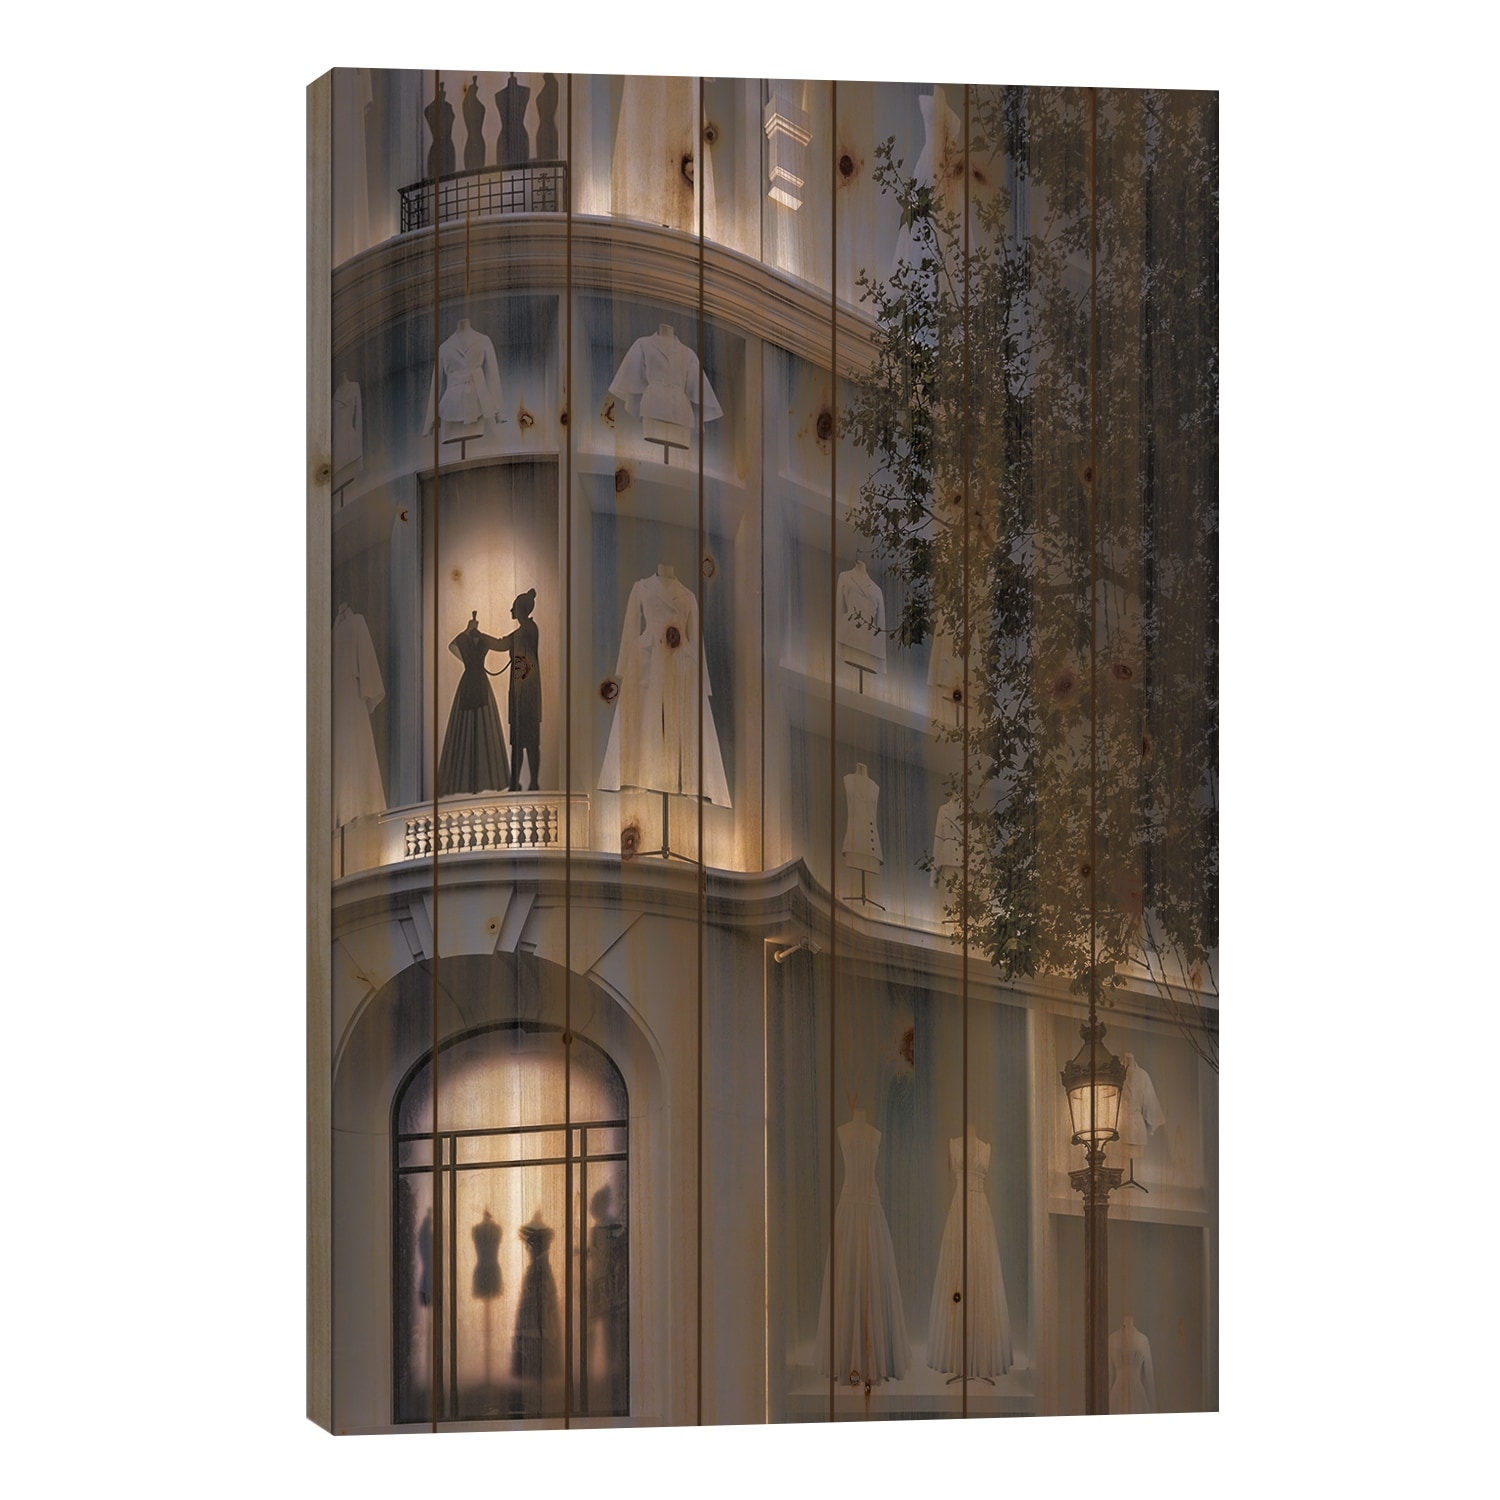 Dior Champs-Elysees, Paris Print On Wood by Jérôme Labouyrie - Multi-Color  - Bed Bath & Beyond - 38300492